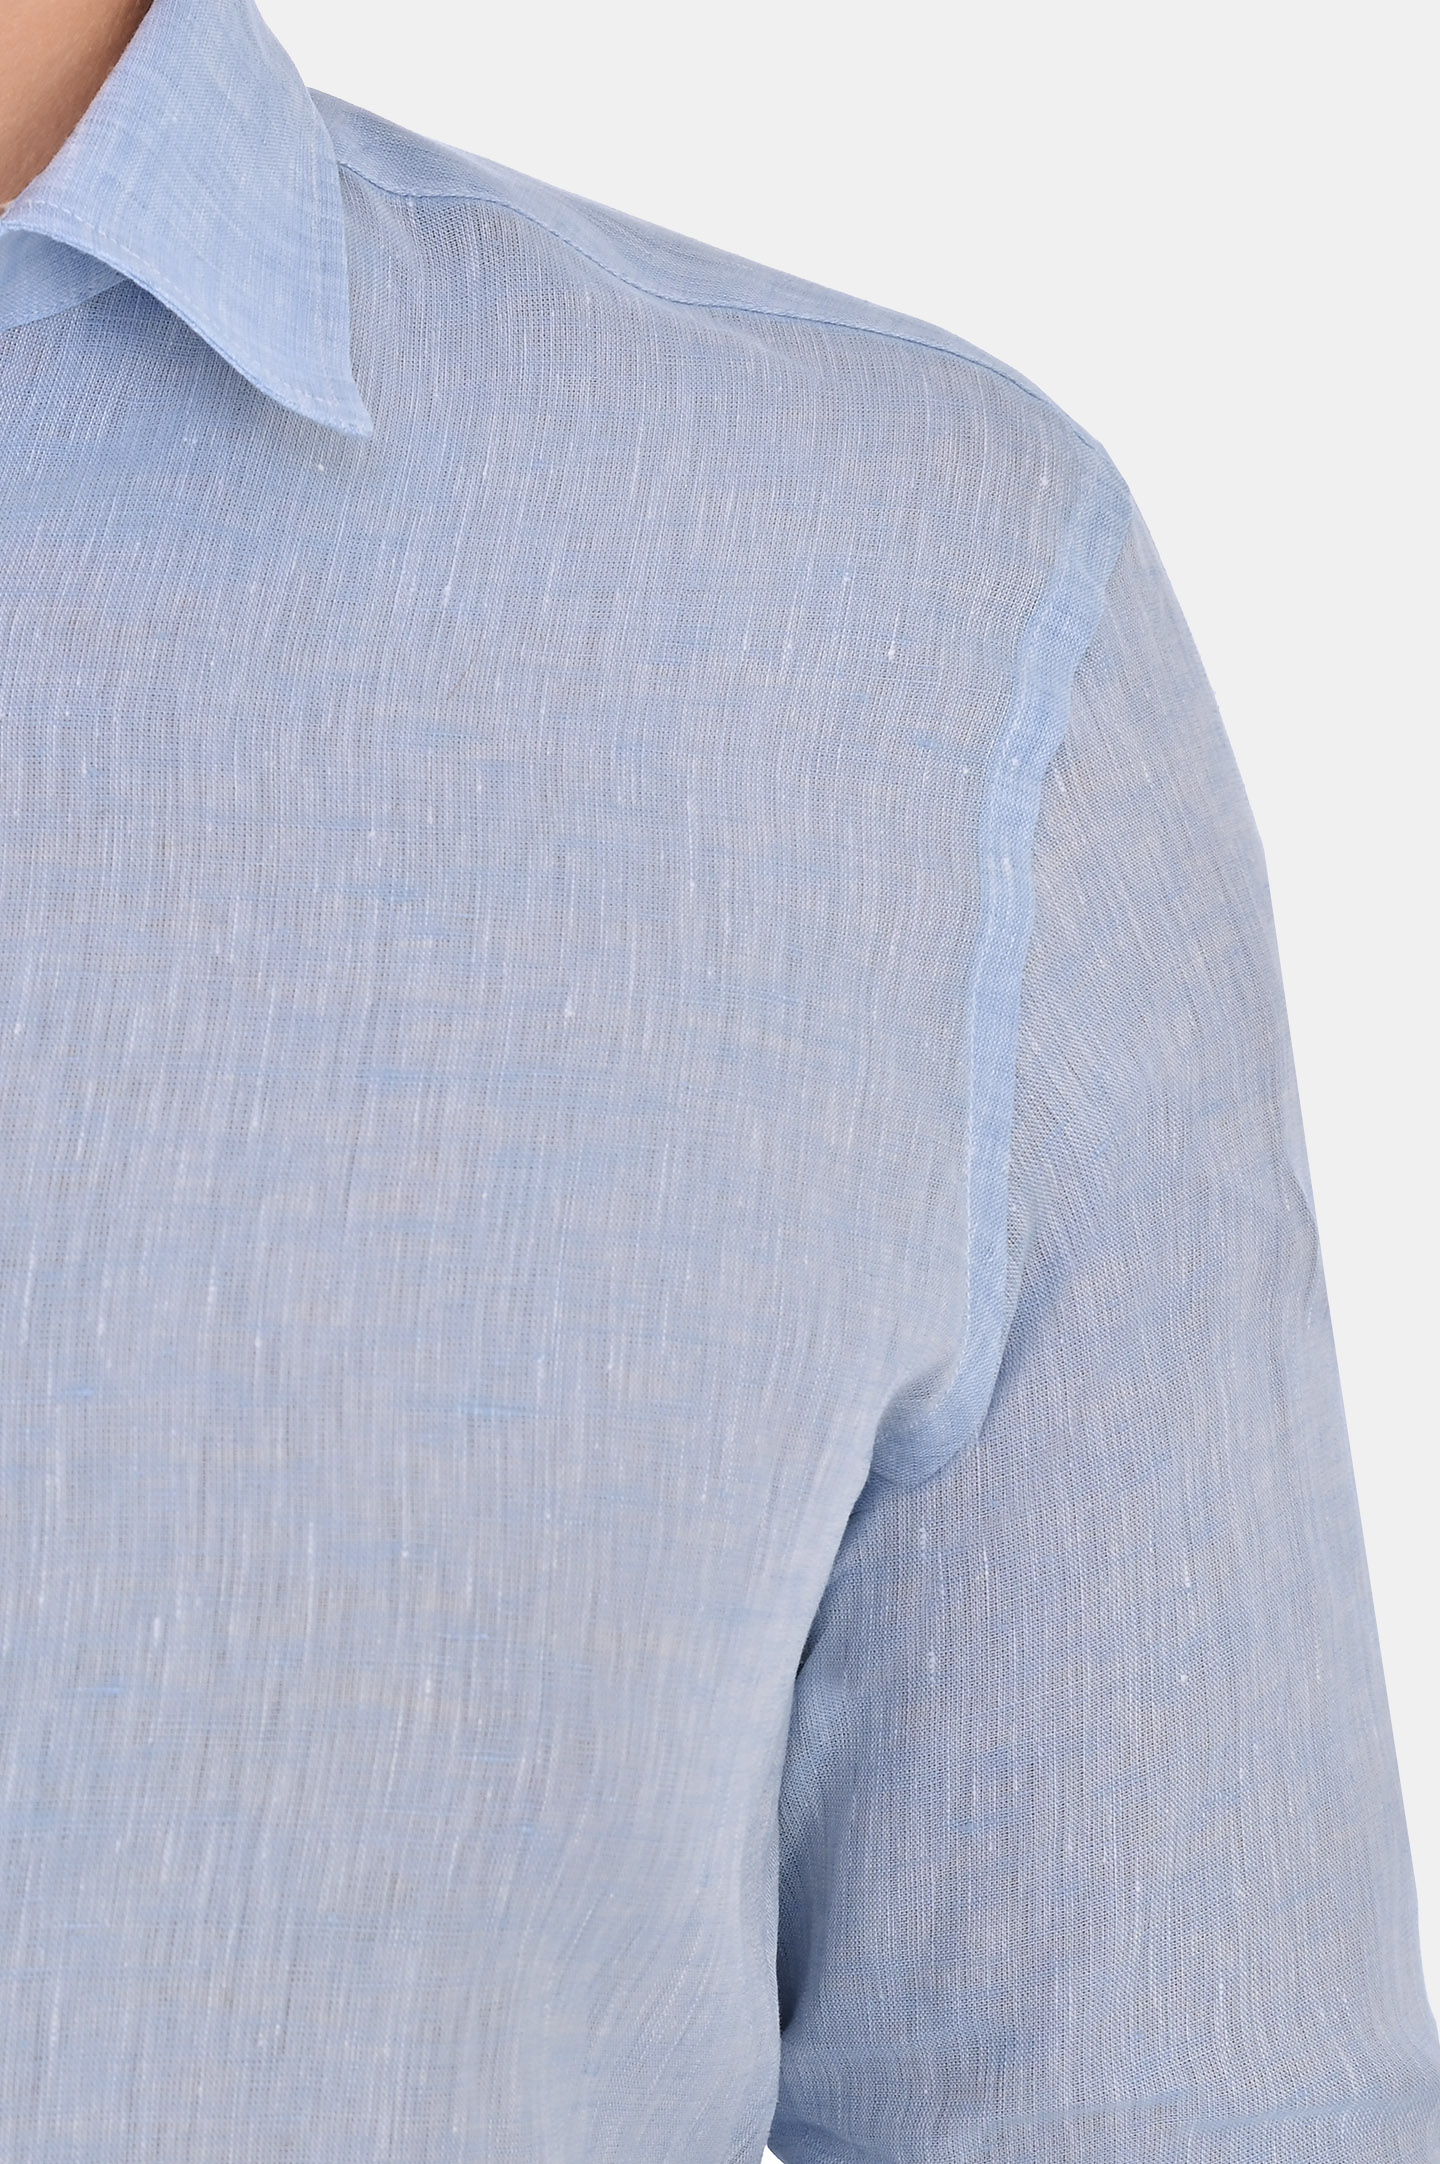 Льняная классическая рубашка CANALI GL03099 L777, цвет: Голубой, Мужской